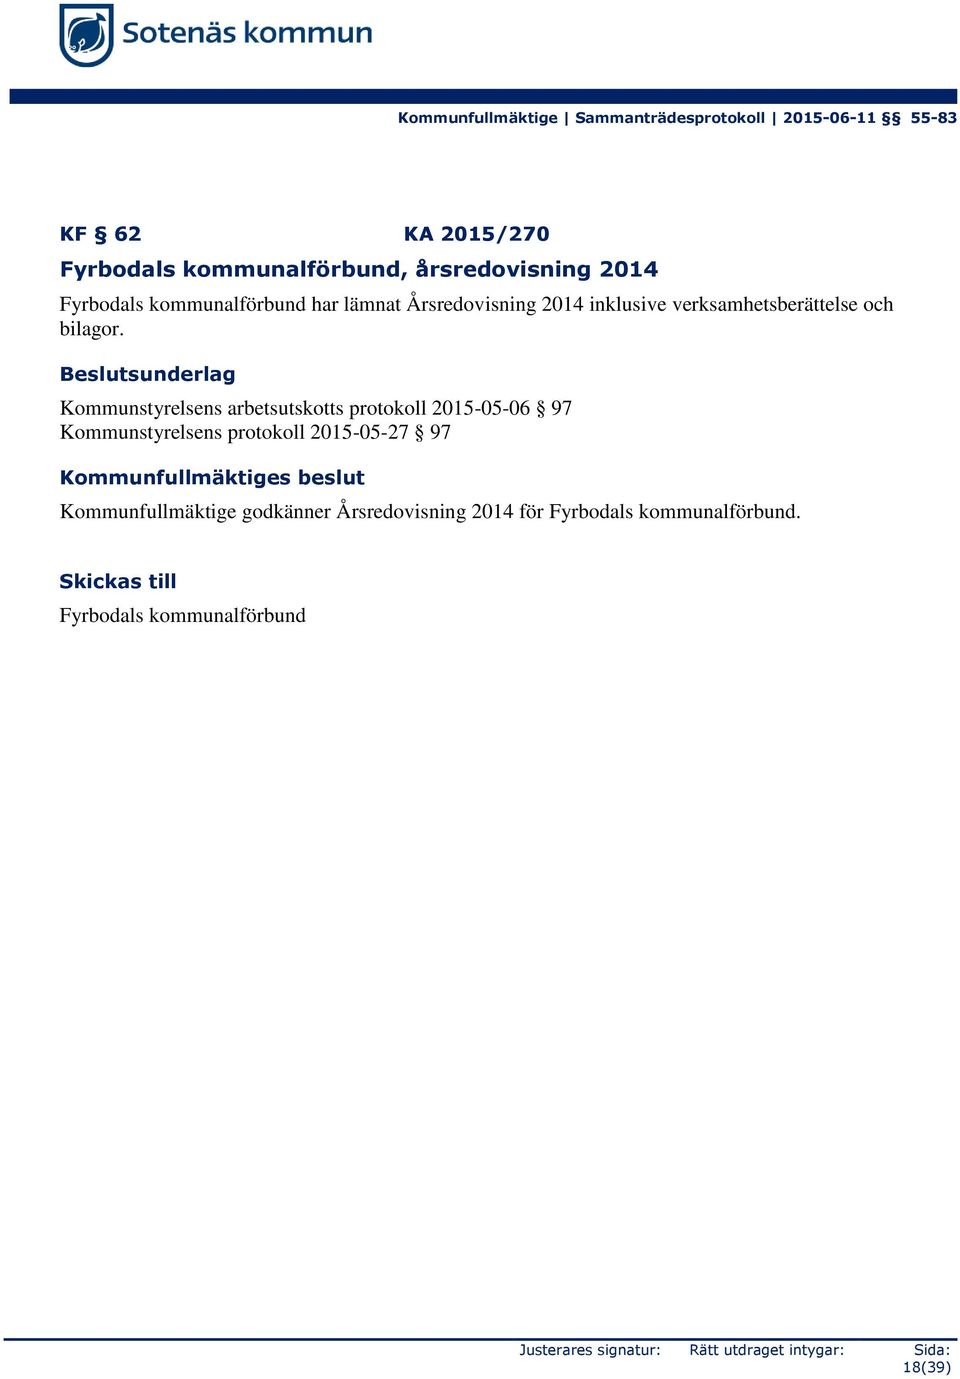 Beslutsunderlag Kommunstyrelsens arbetsutskotts protokoll 2015-05-06 97 Kommunstyrelsens